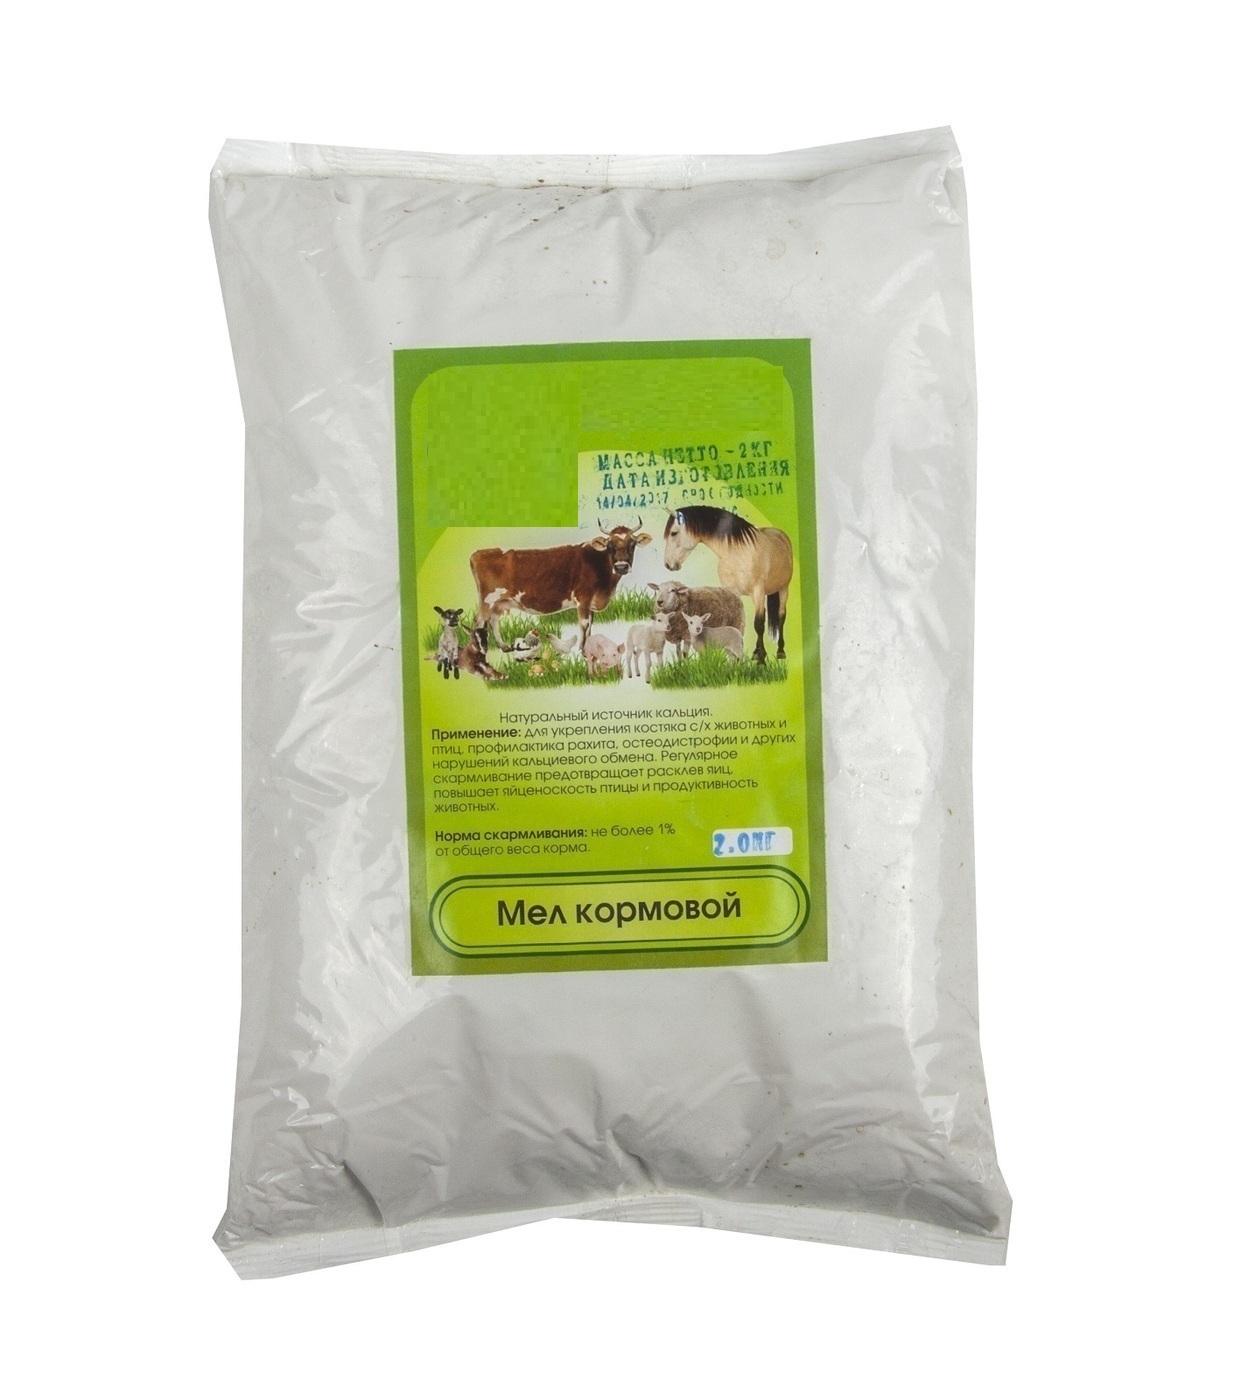 Кормовая добавка МЕЛ, 2 кг для домашней птицы и домашних животных: коров, лошадей, свиней,